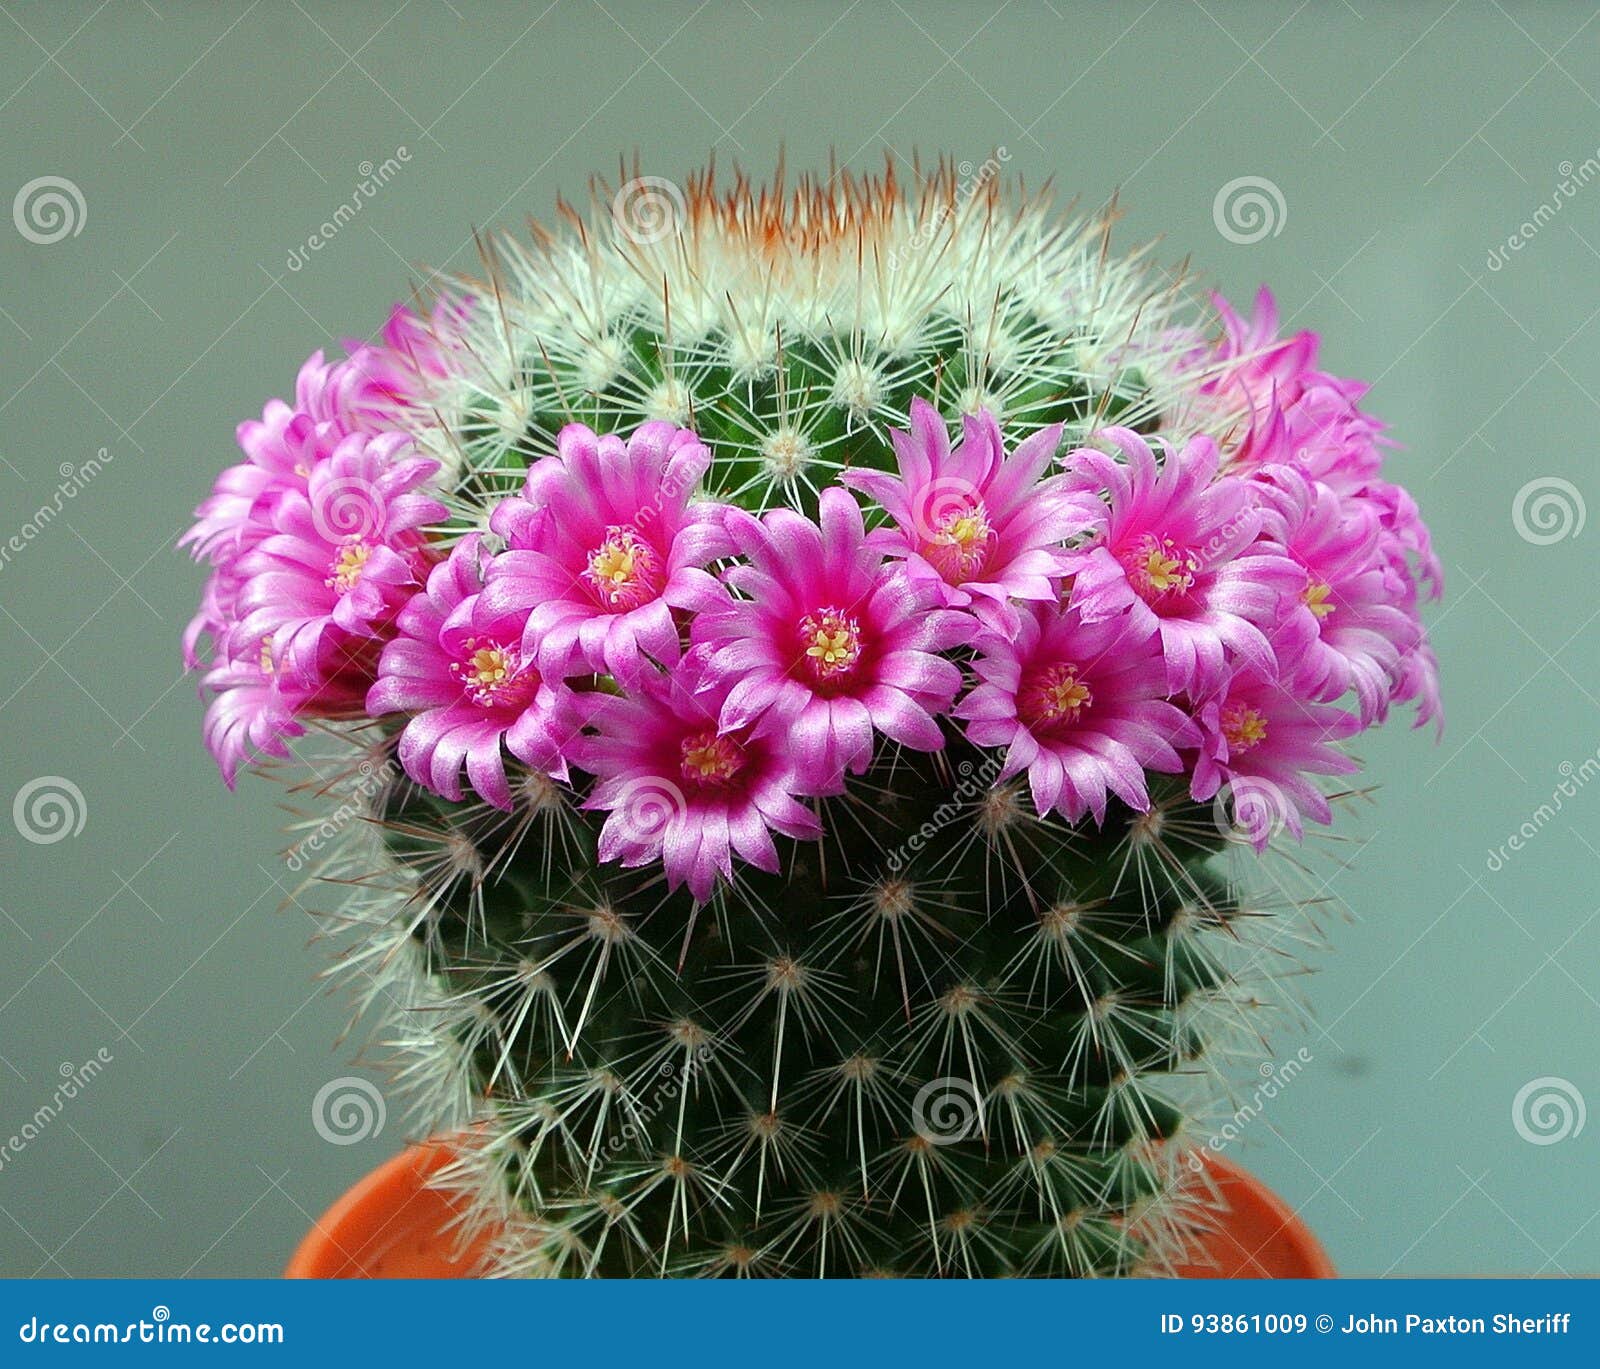 Flor del cacto imagen de archivo. Imagen de rosa, espinas - 93861009